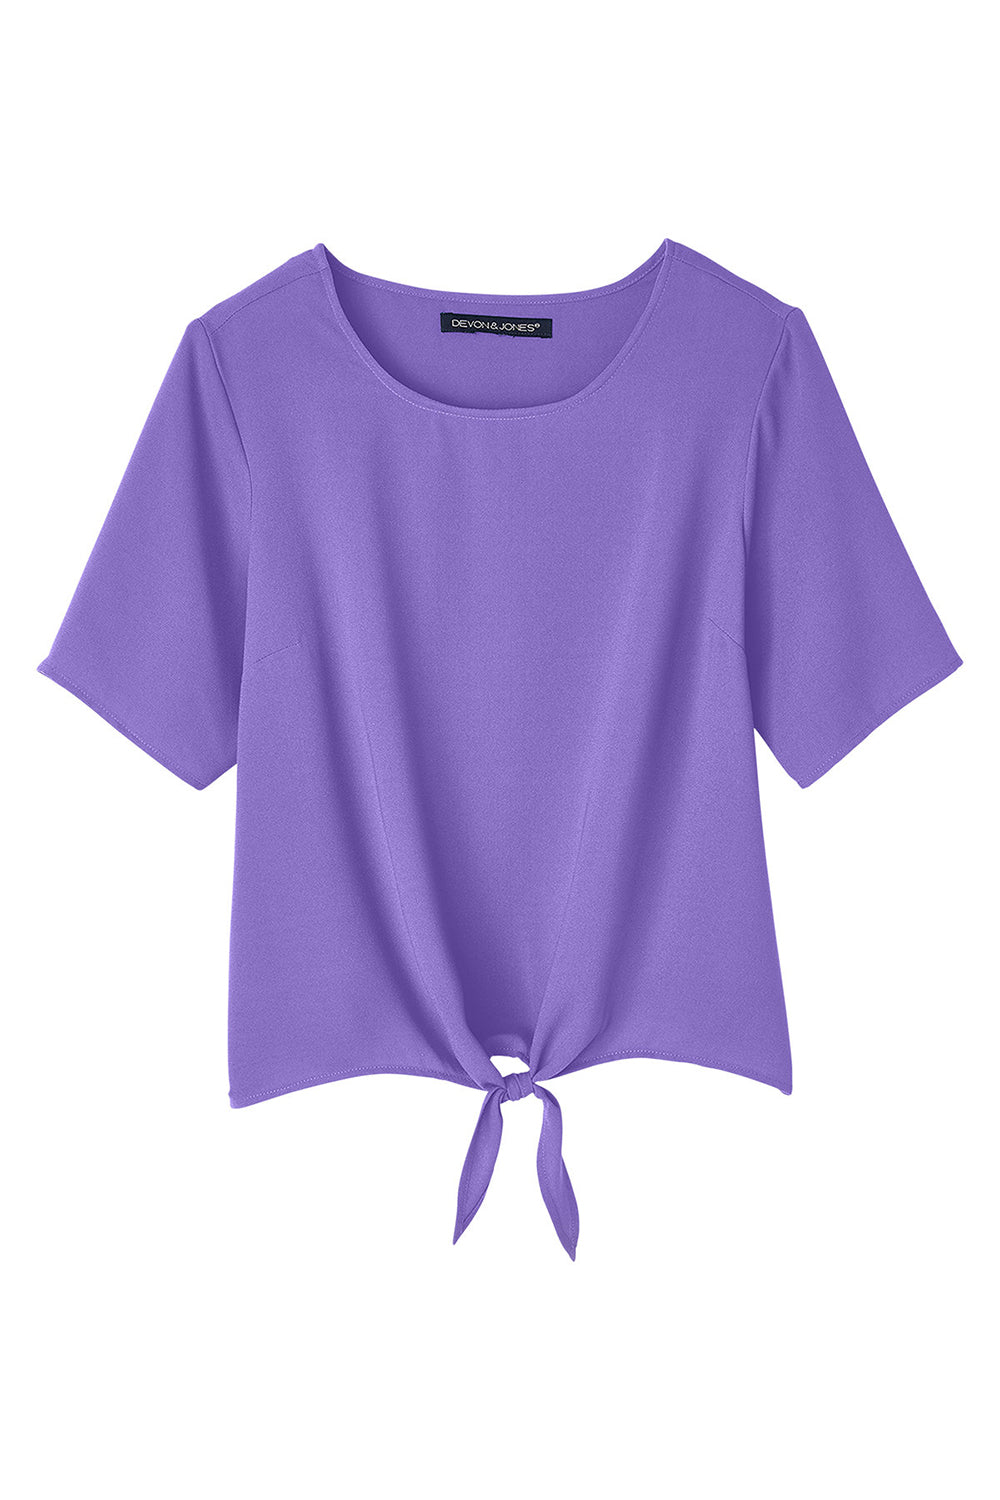 Devon & Jones DP617W Womens Perfect Fit Tie Front Short Sleeve Blouse Grape Purple Flat Front